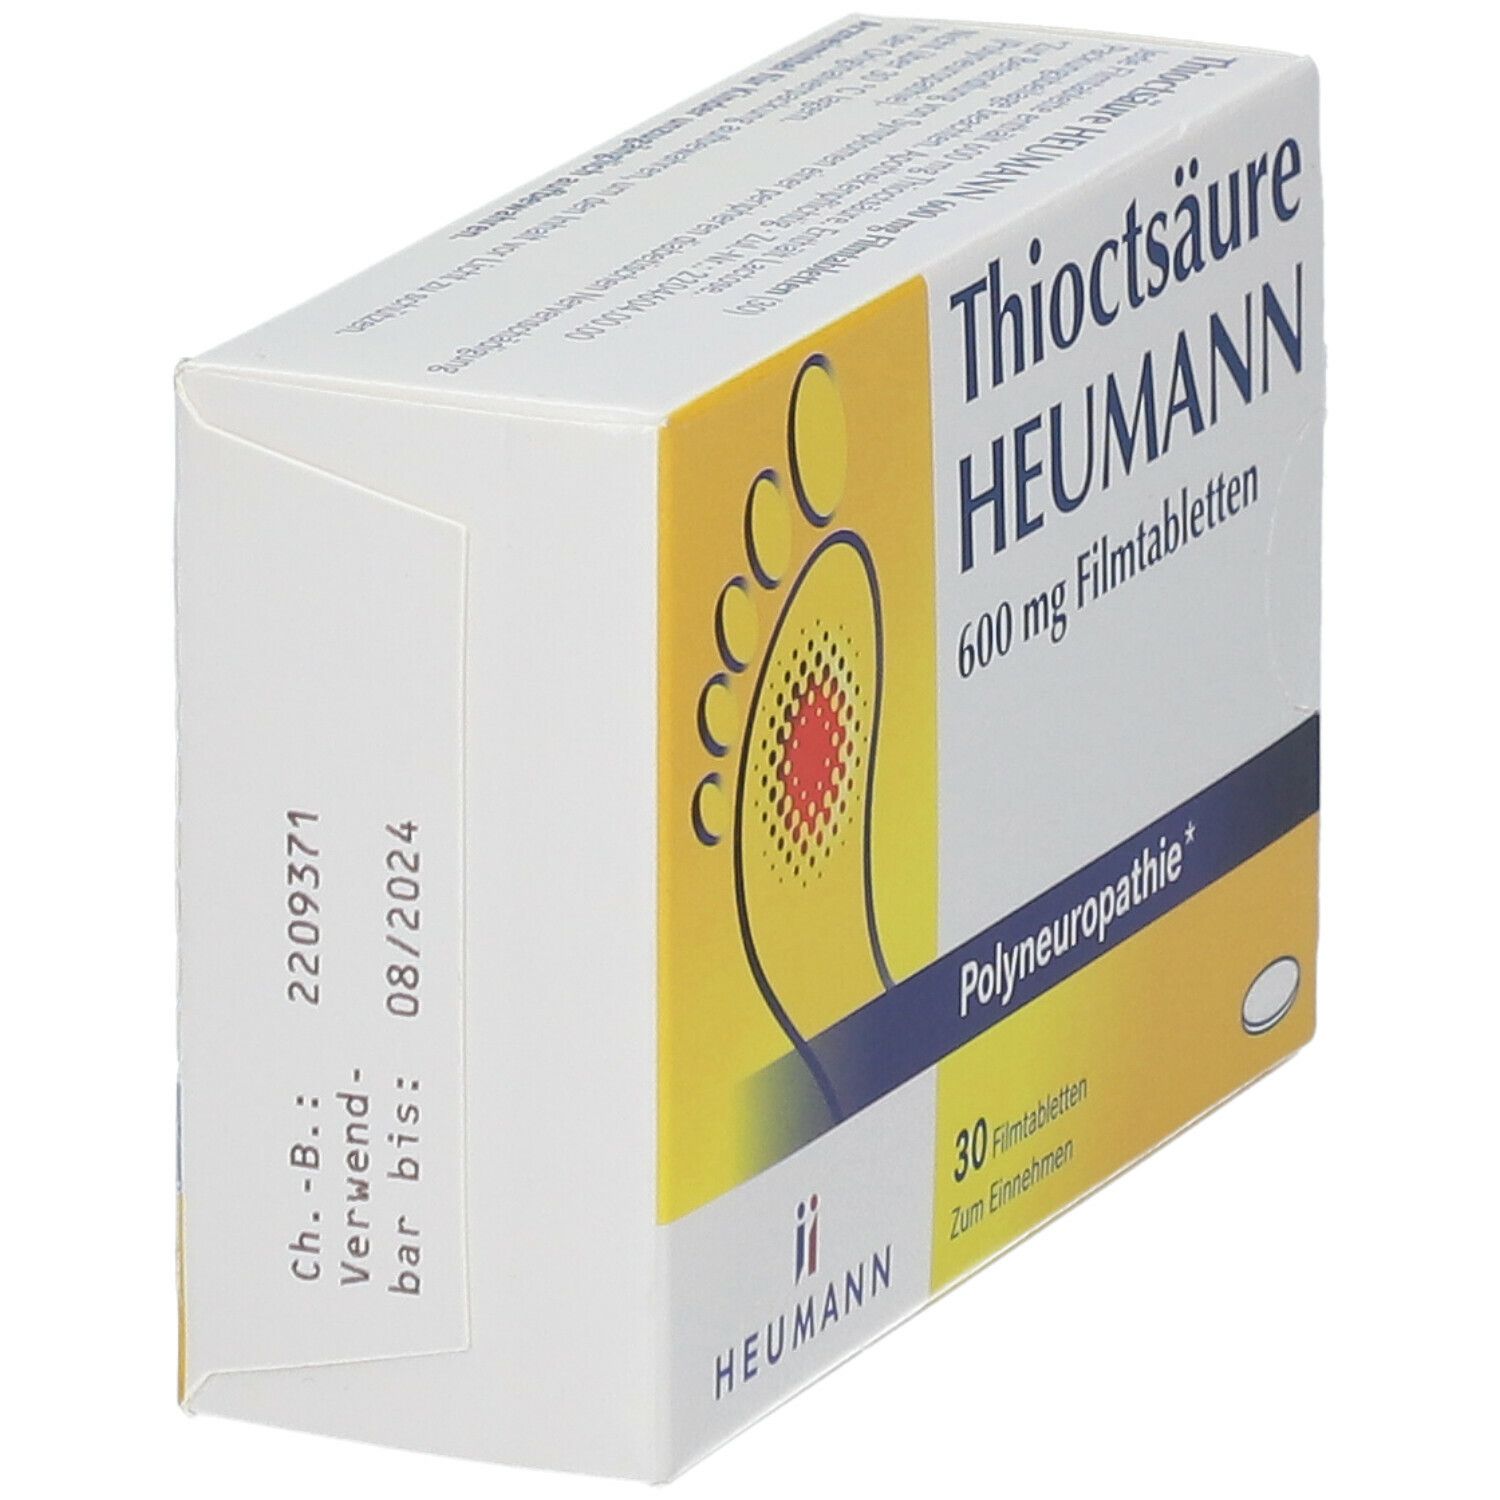 Thioctsäure Heumann 600 mg